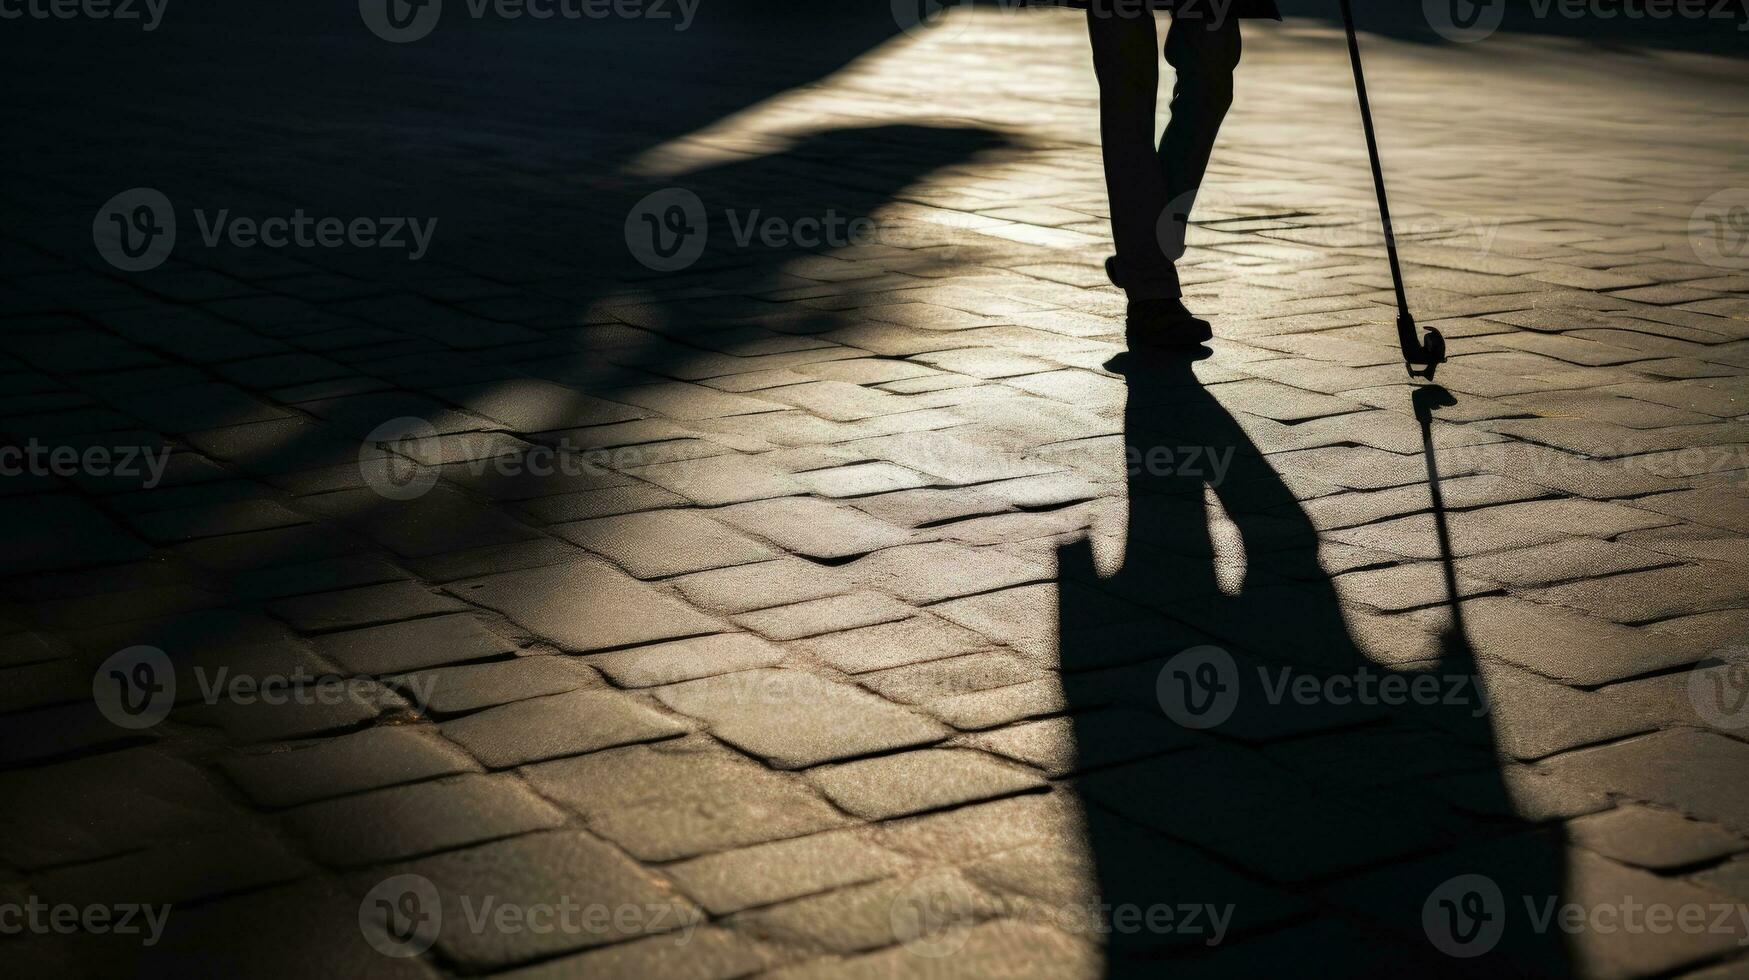 mancando pessoa com bengala sombra em terra simbolizando incapacidade velho era cegueira intenso vida. silhueta conceito foto